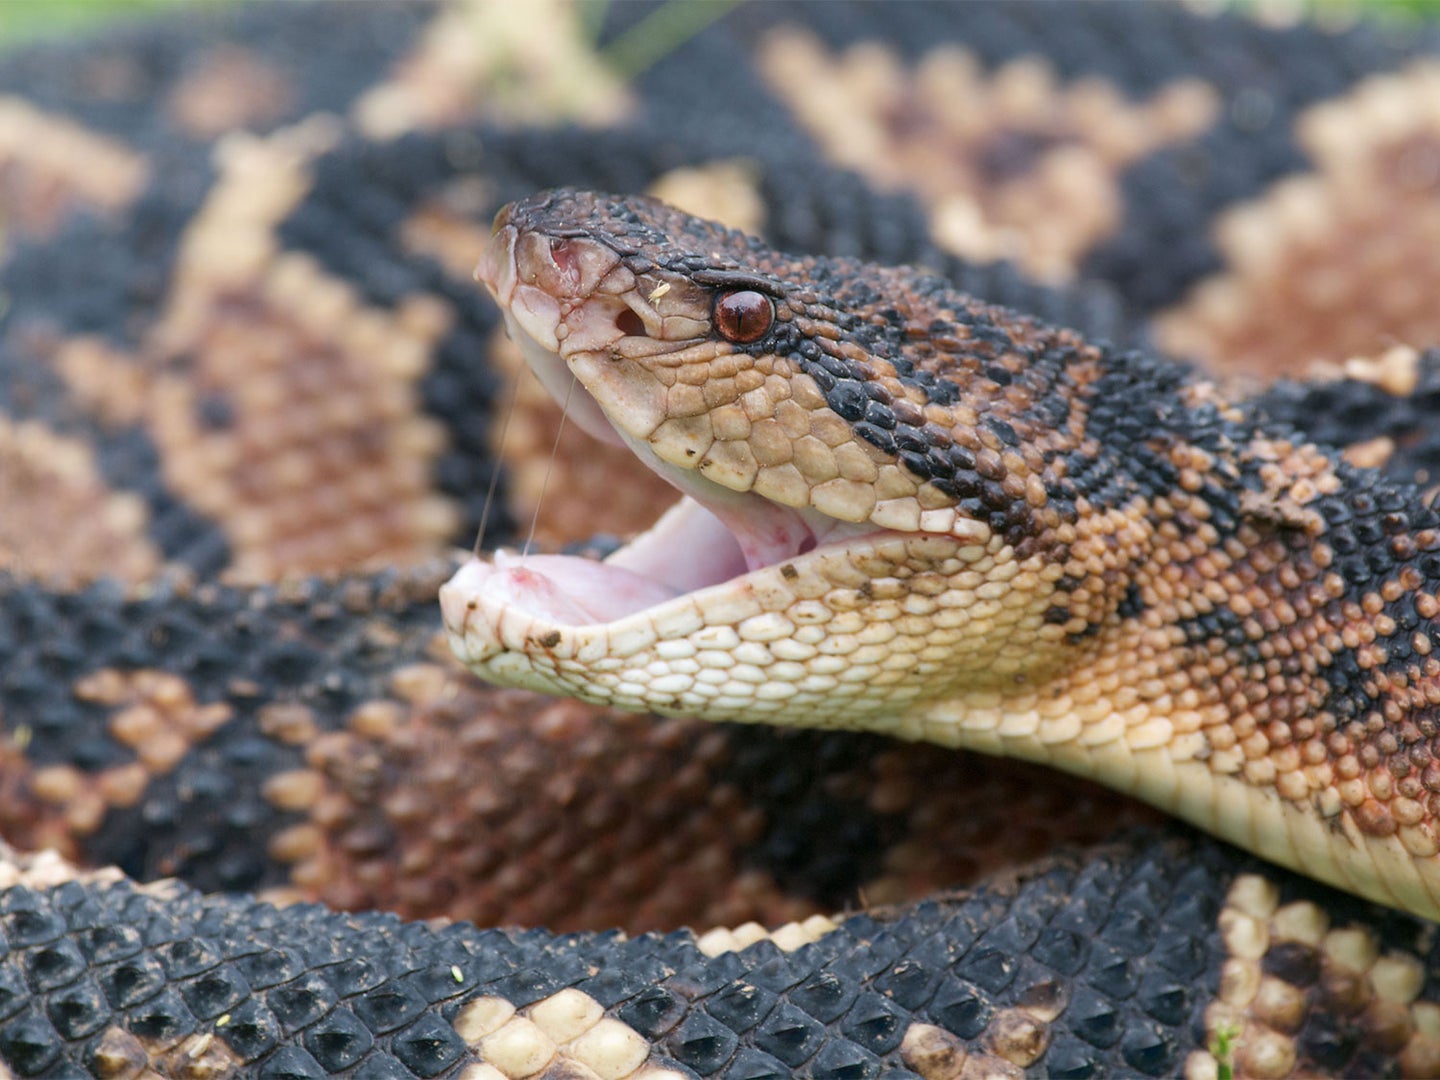 Closeup on the open mouth of a venomous Bushmaster snake.